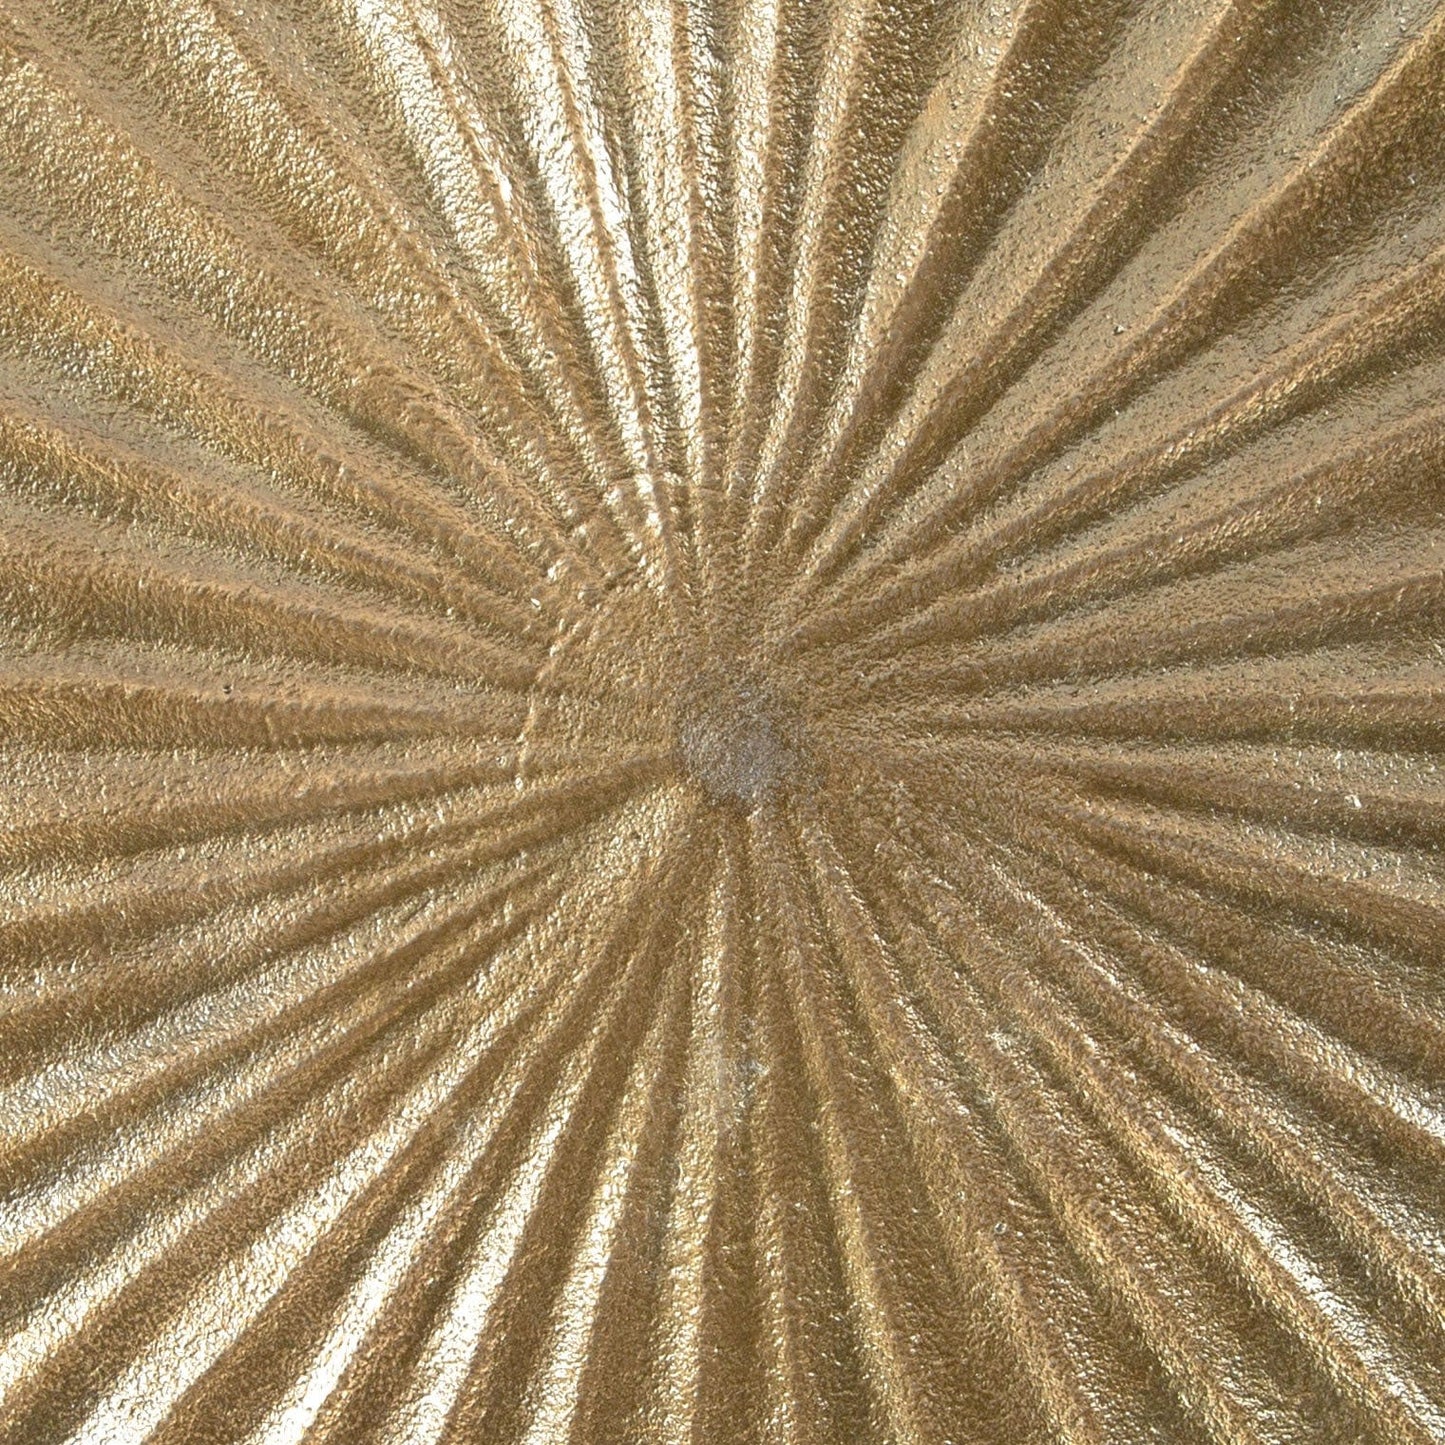 Close up of center of top sun design